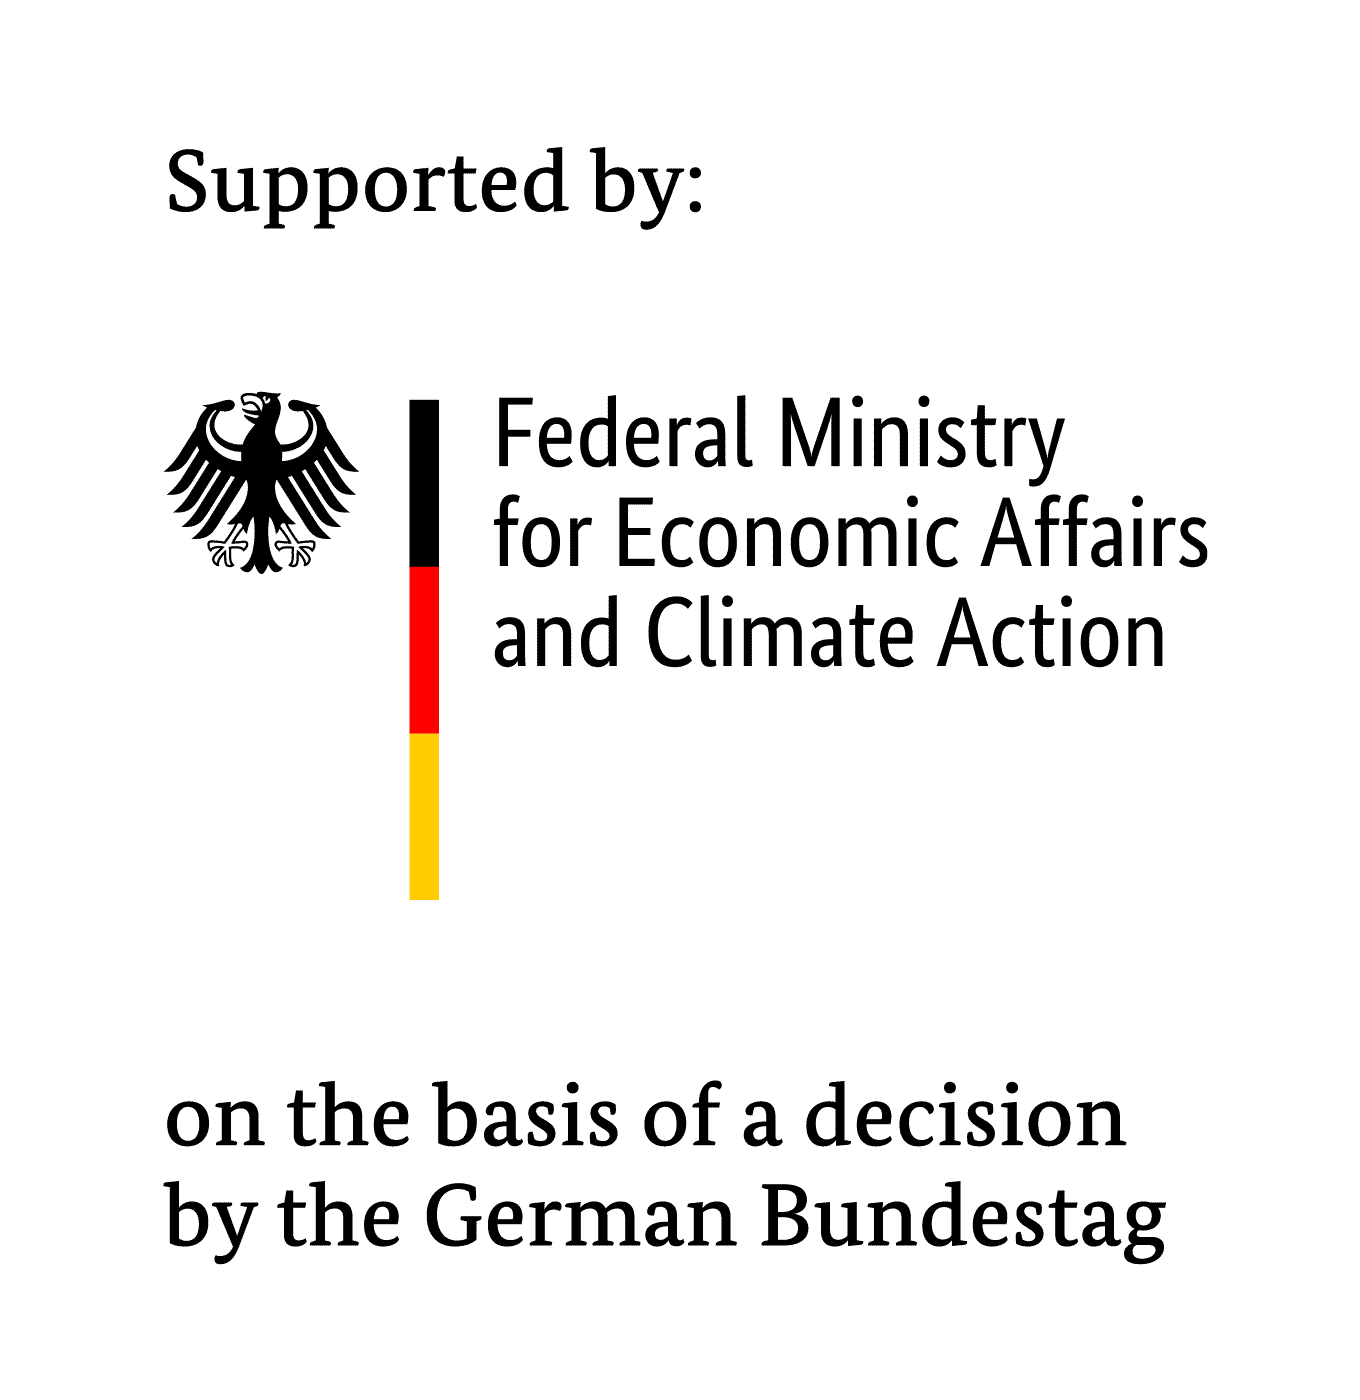 BMWK: Support + Bundestag